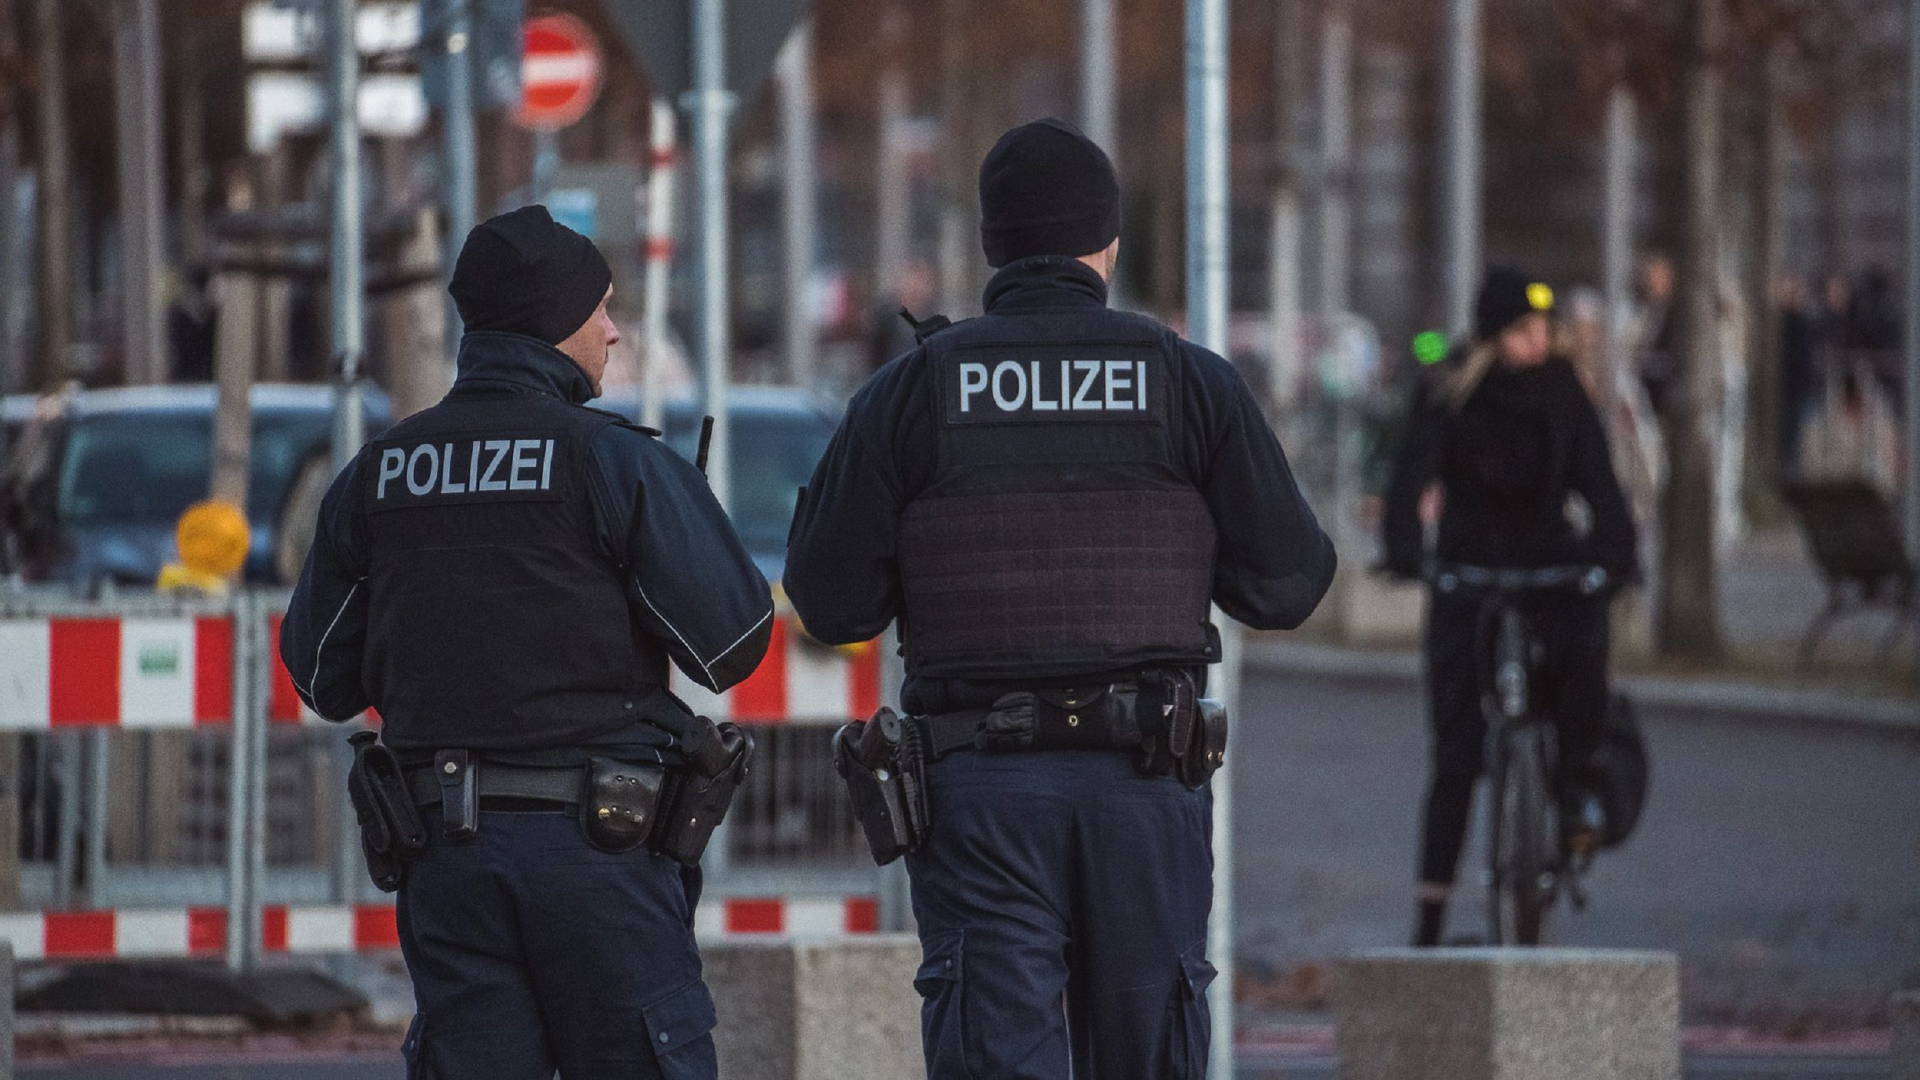 njemacka-policija-pixabay.jpg